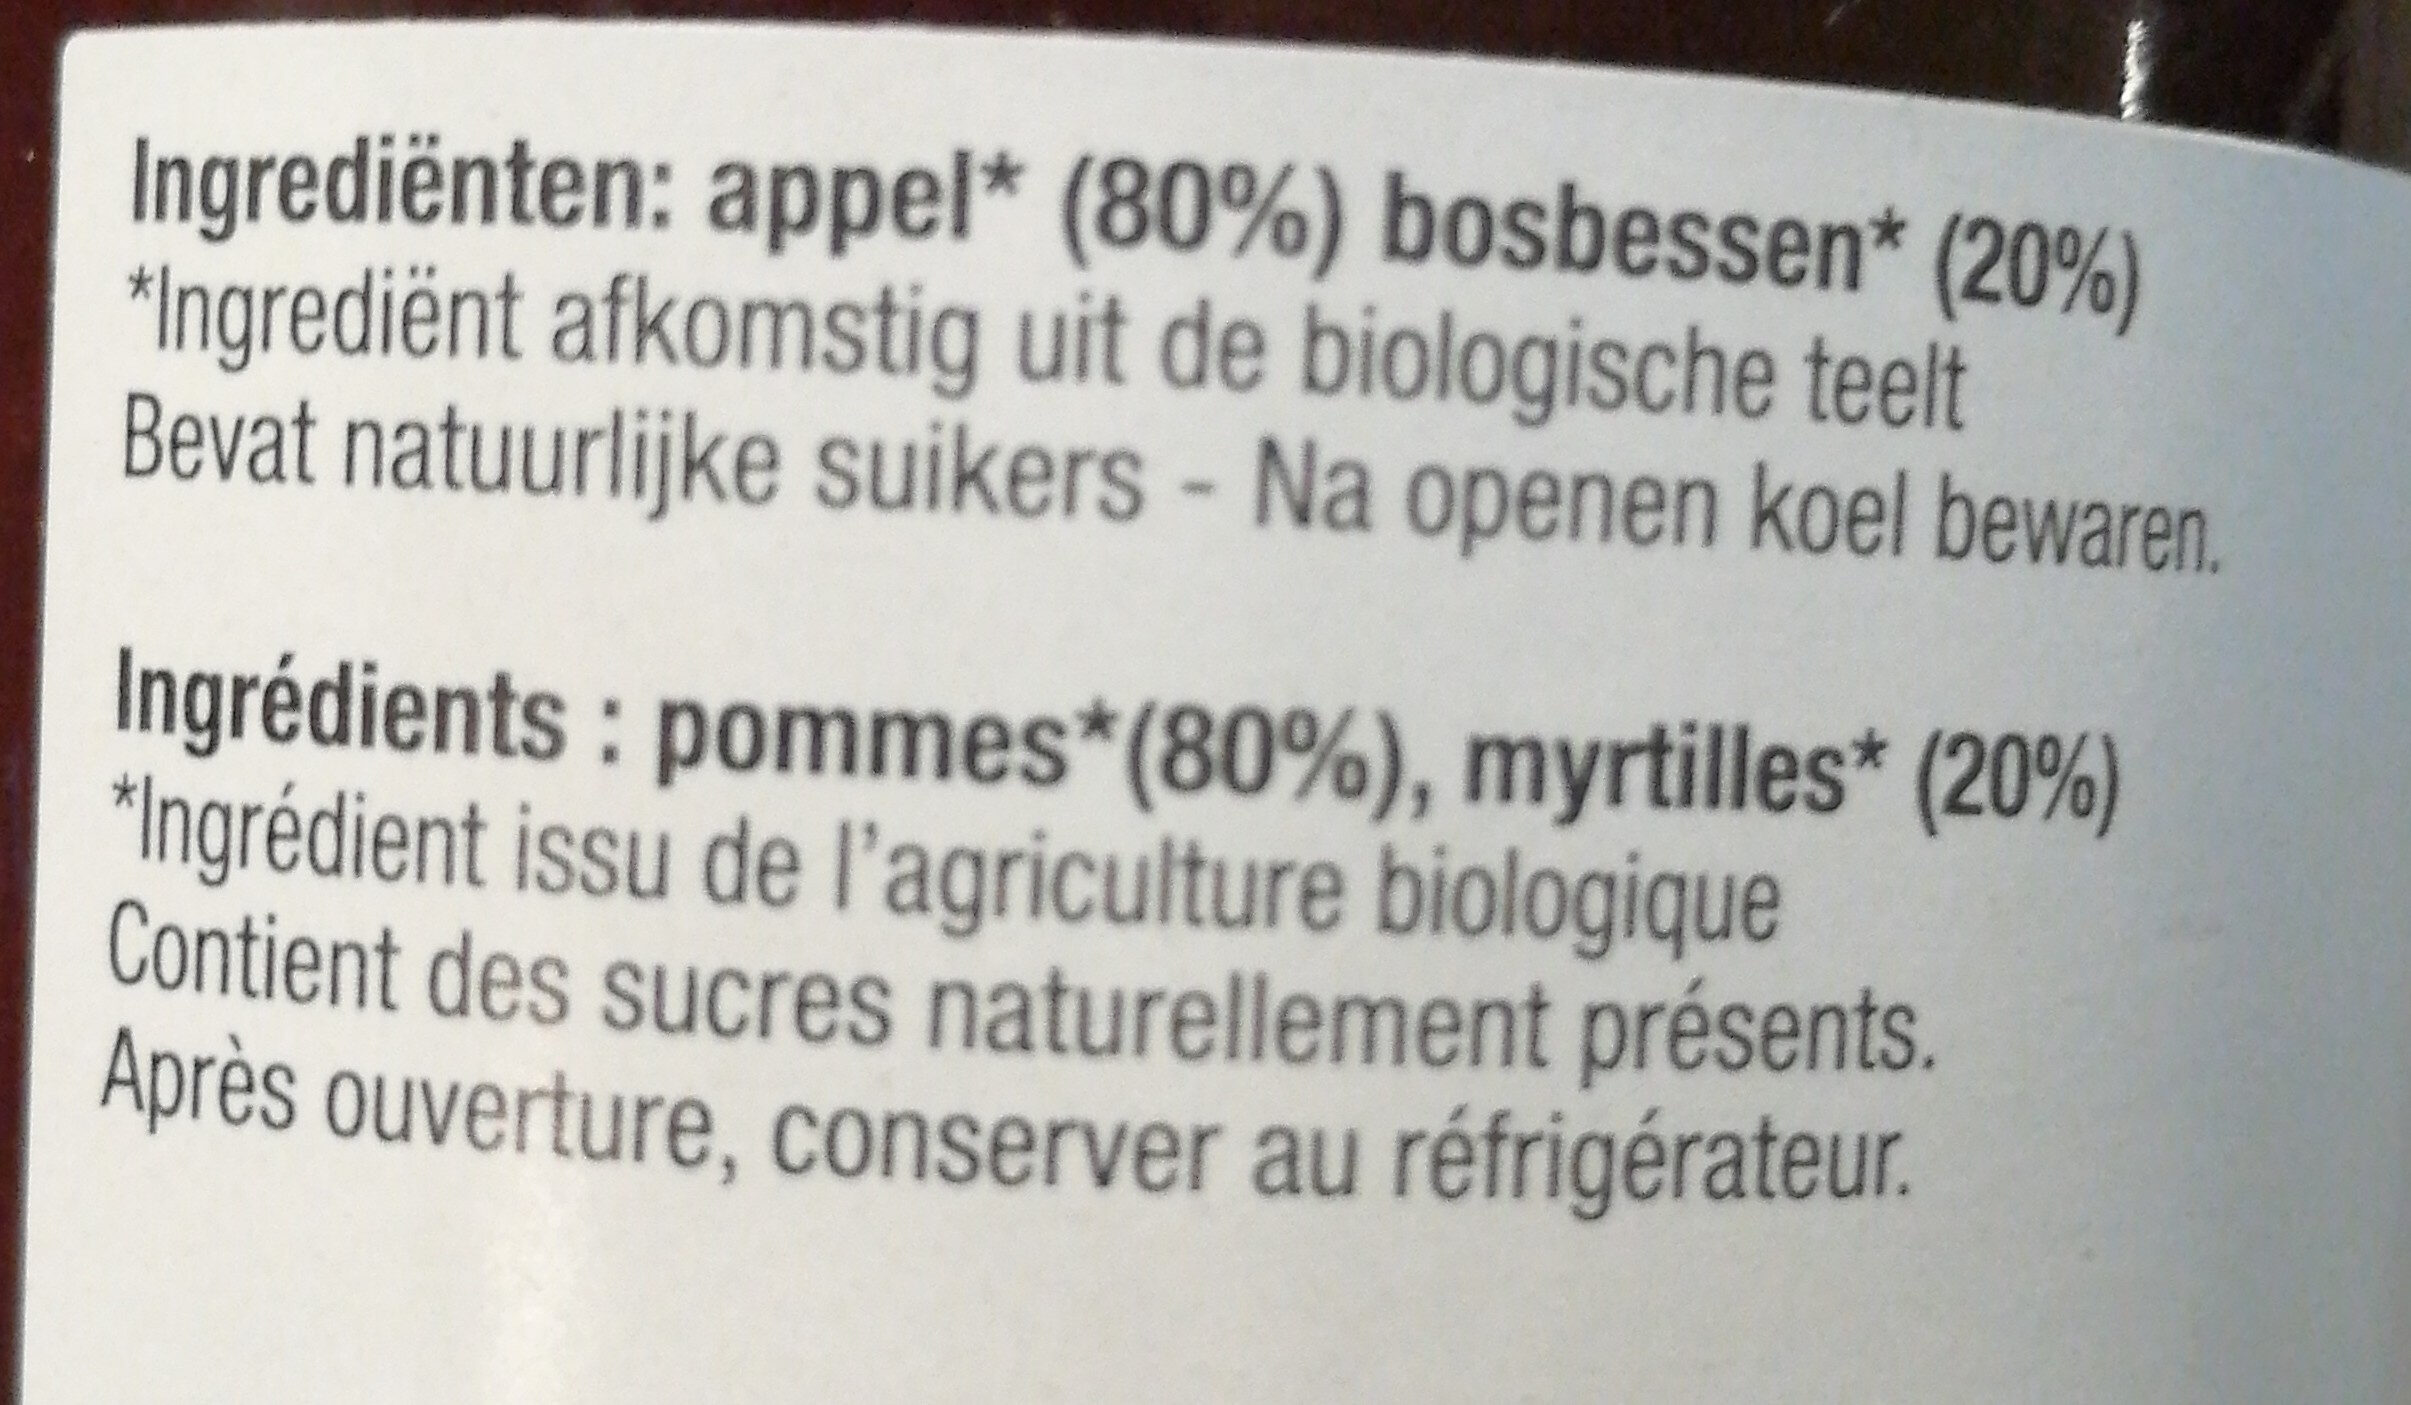 Puree pommes-Myrtilles - Ingredients - fr